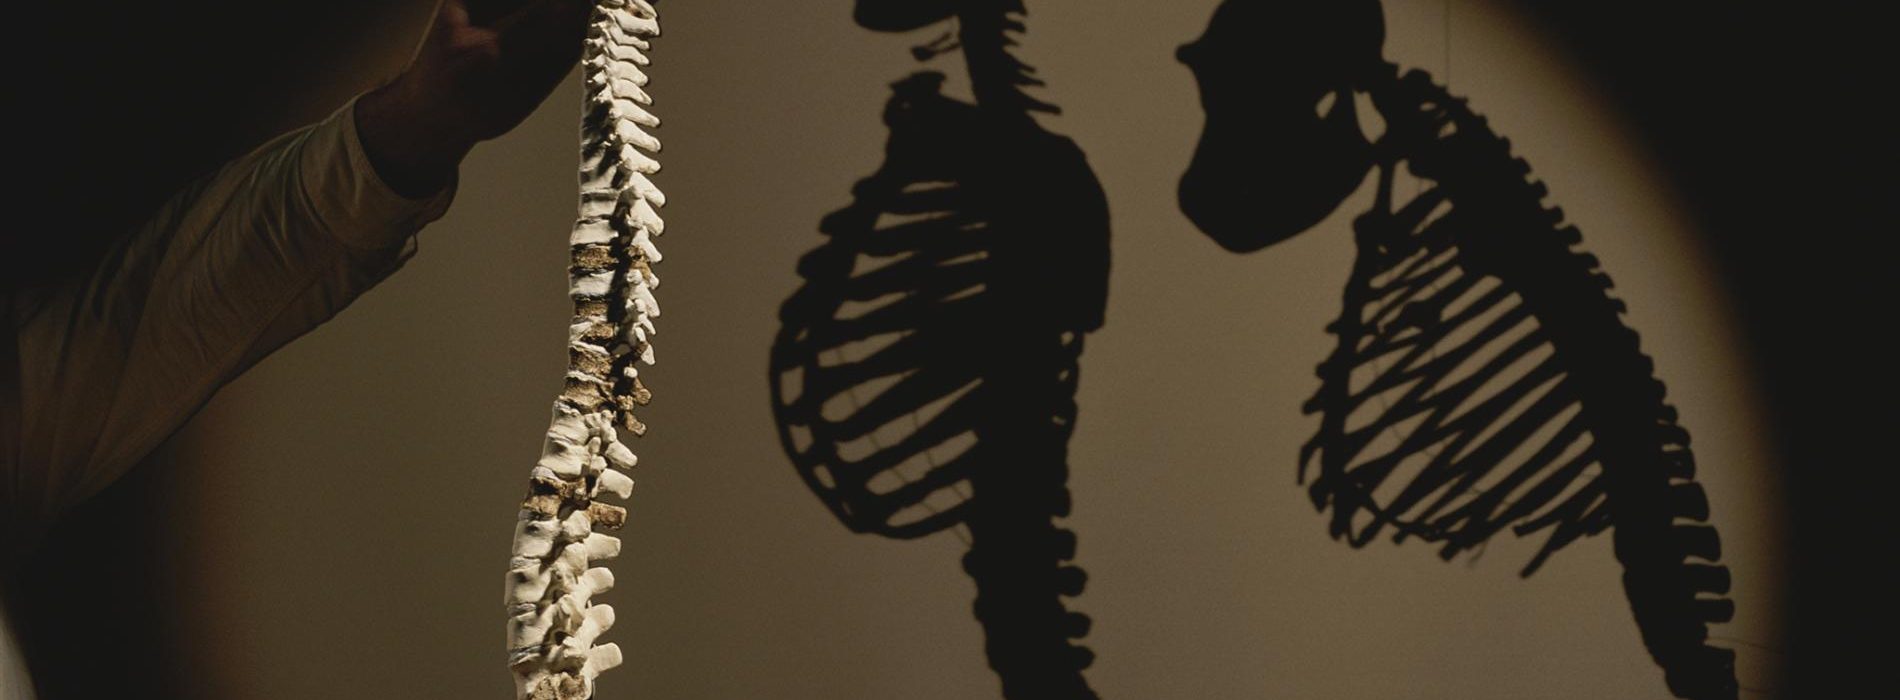 Uw rugpijn kan te wijten zijn aan evolutie en wervelkolomvorm